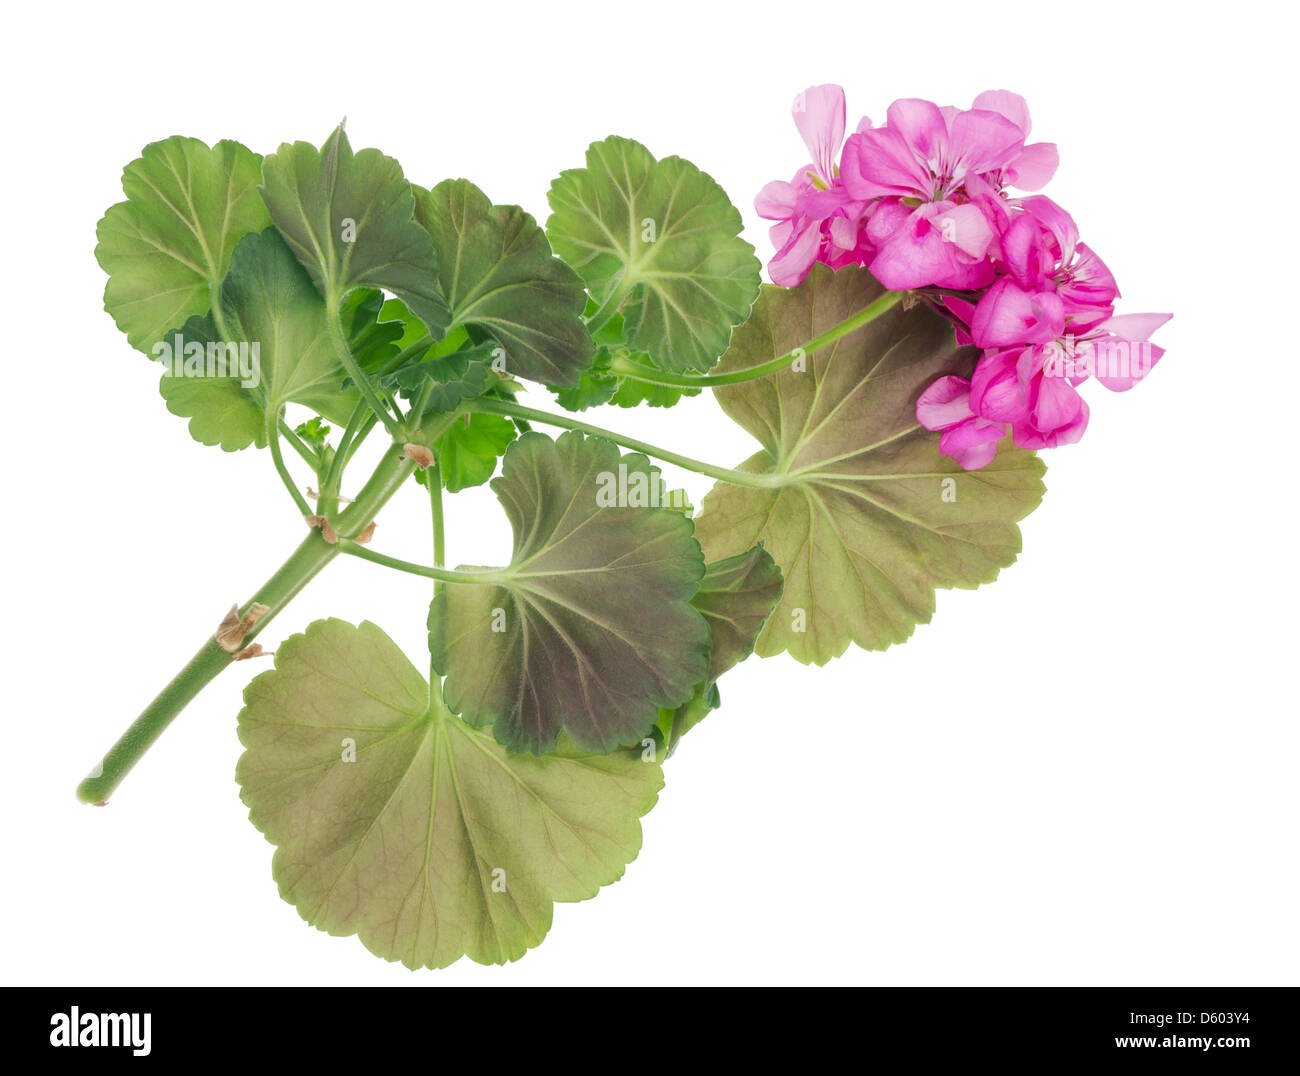 favorite indoor plants Pink Geranium Stock Photo